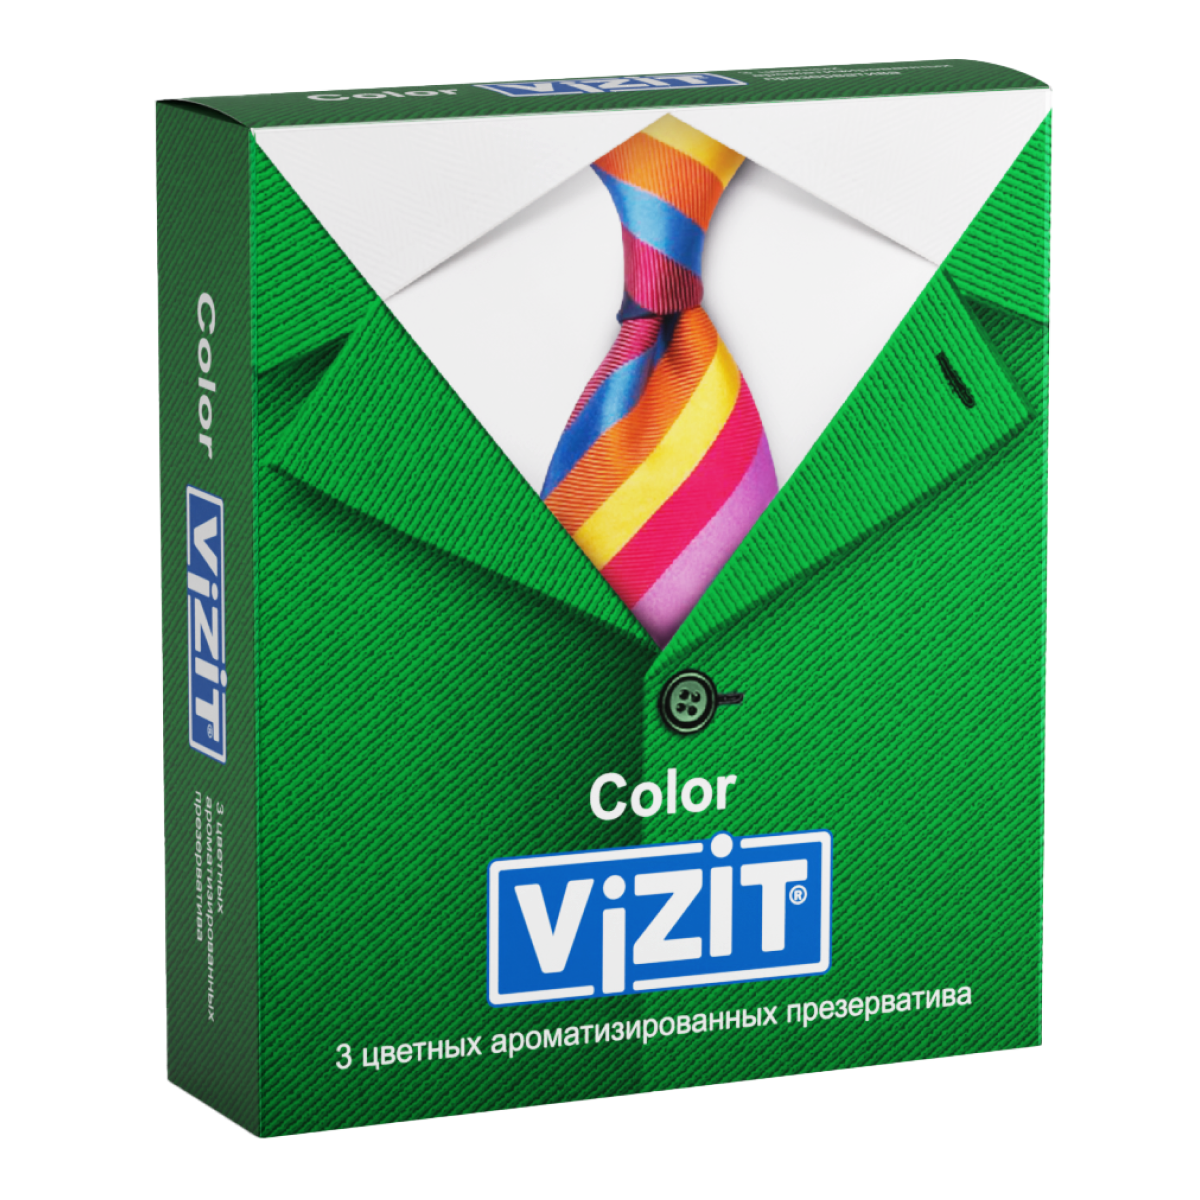 Презервативы VIZIT Color Цветные ароматизированные 3 шт.